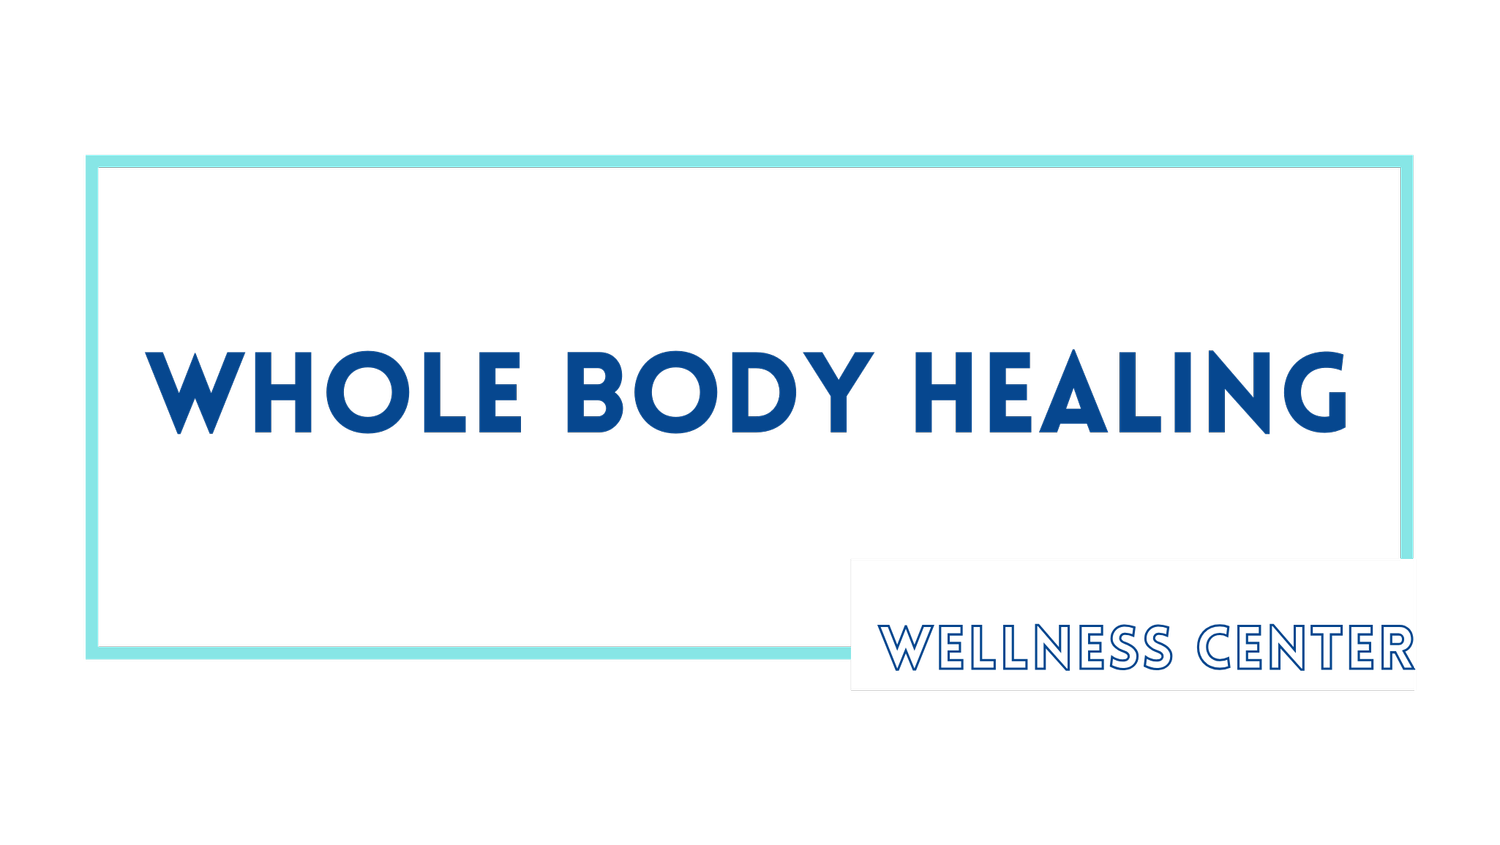 Whole Body Healing Wellness Center